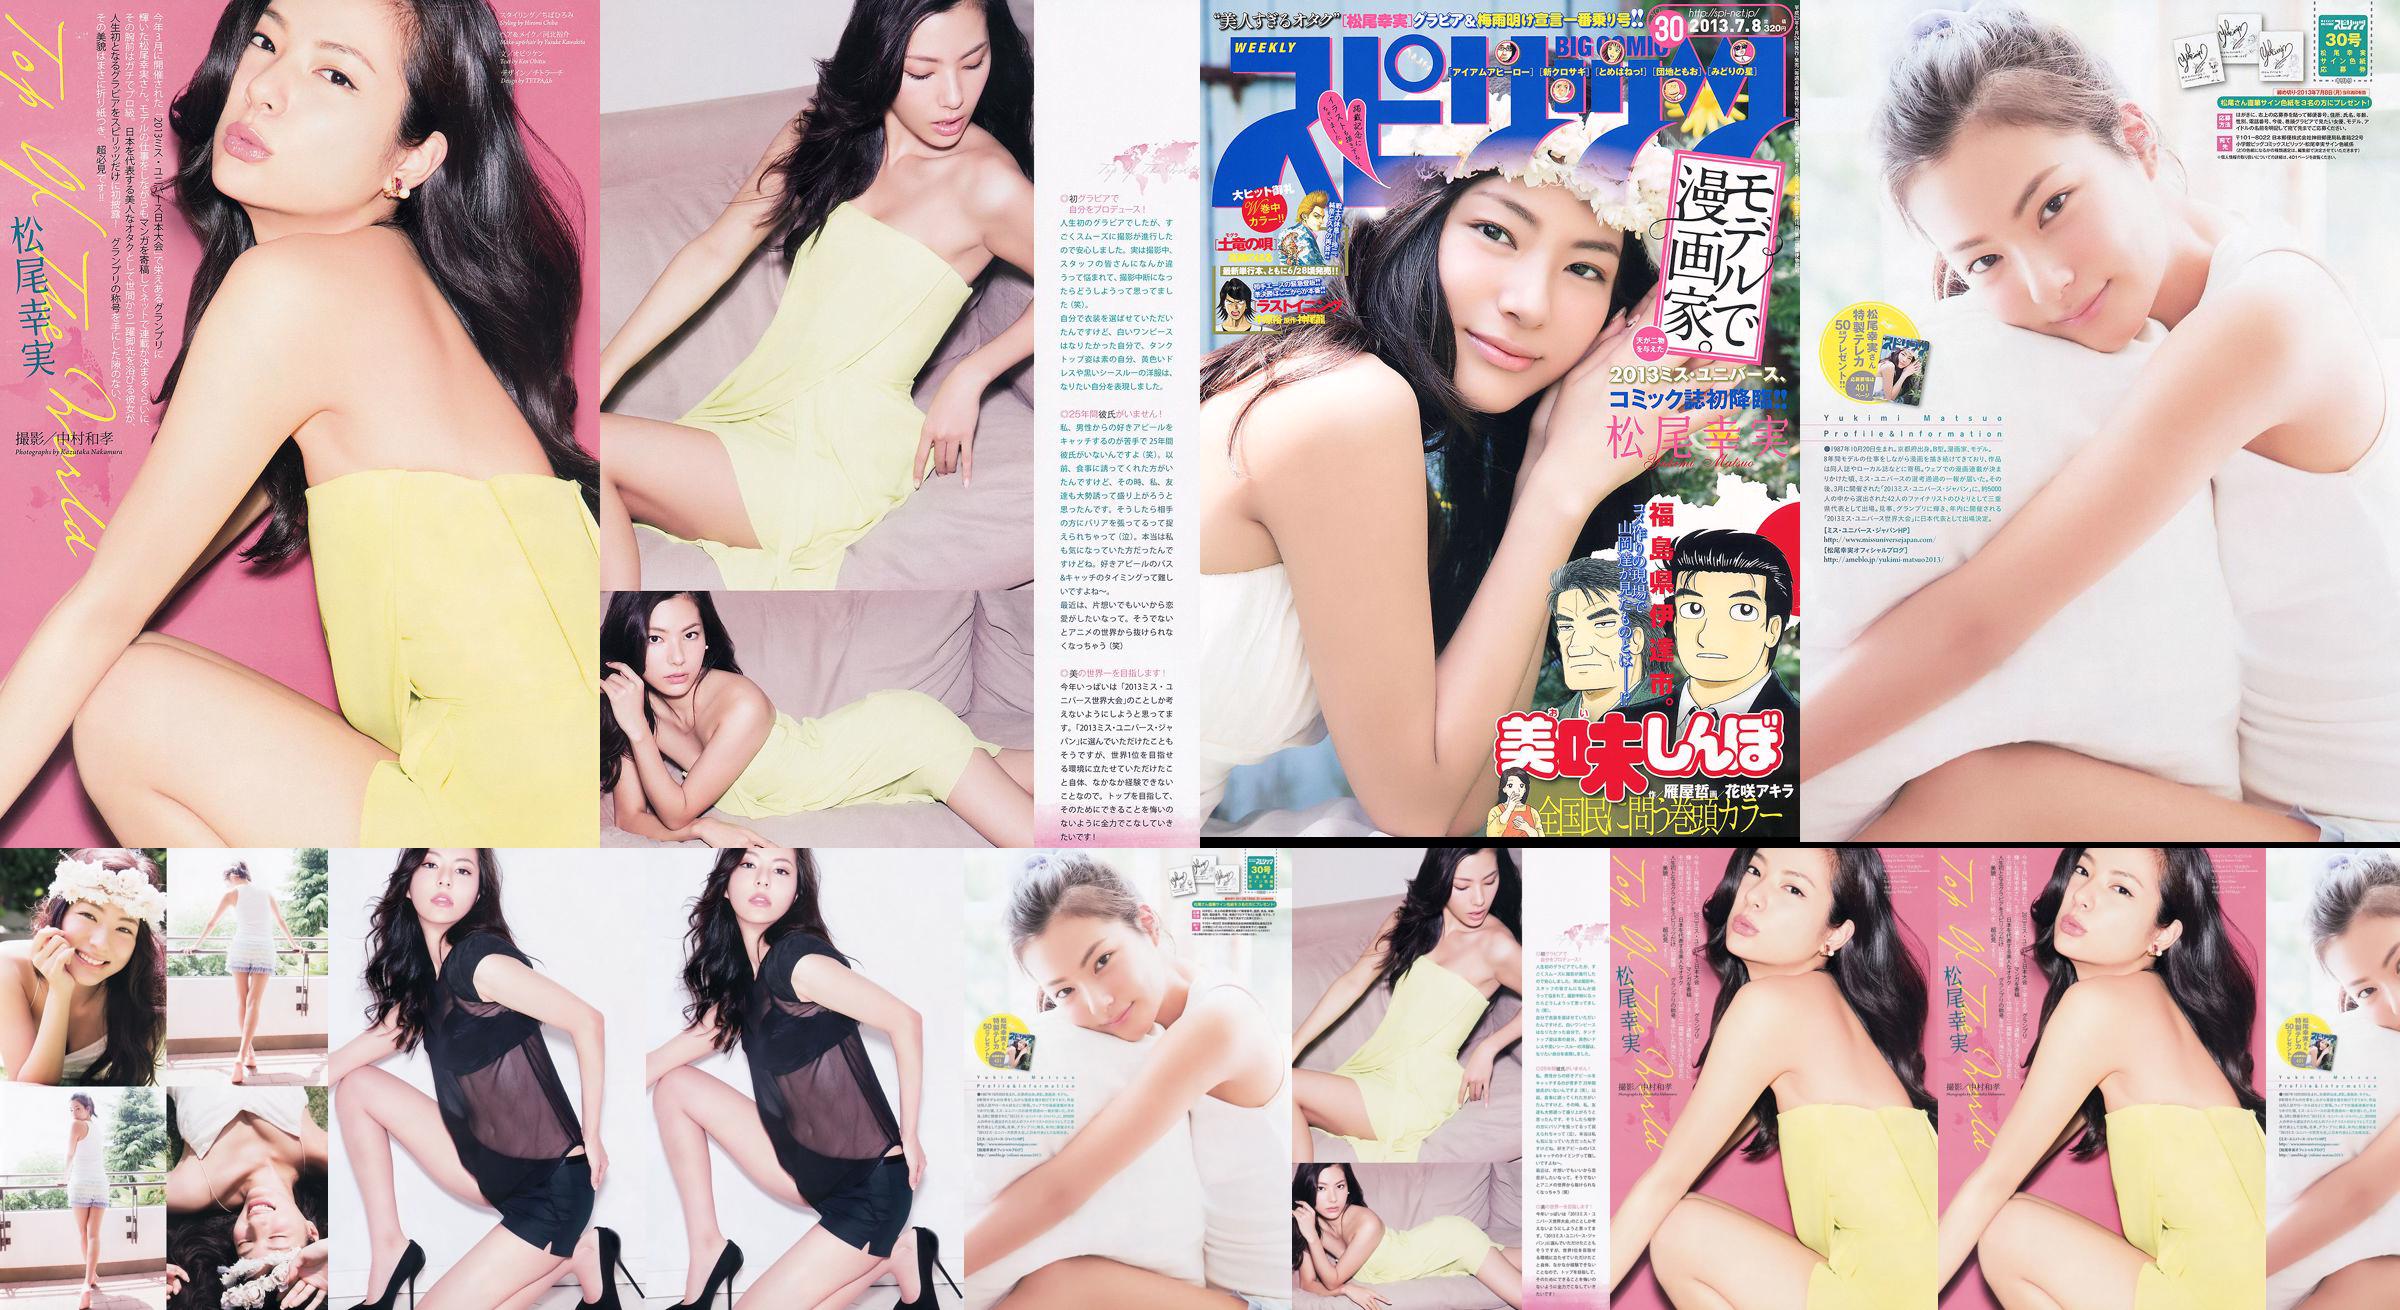 [Semangat Komik Besar Mingguan] Komi Matsuo 2013 Majalah Foto No.30 No.9c3dc2 Halaman 1